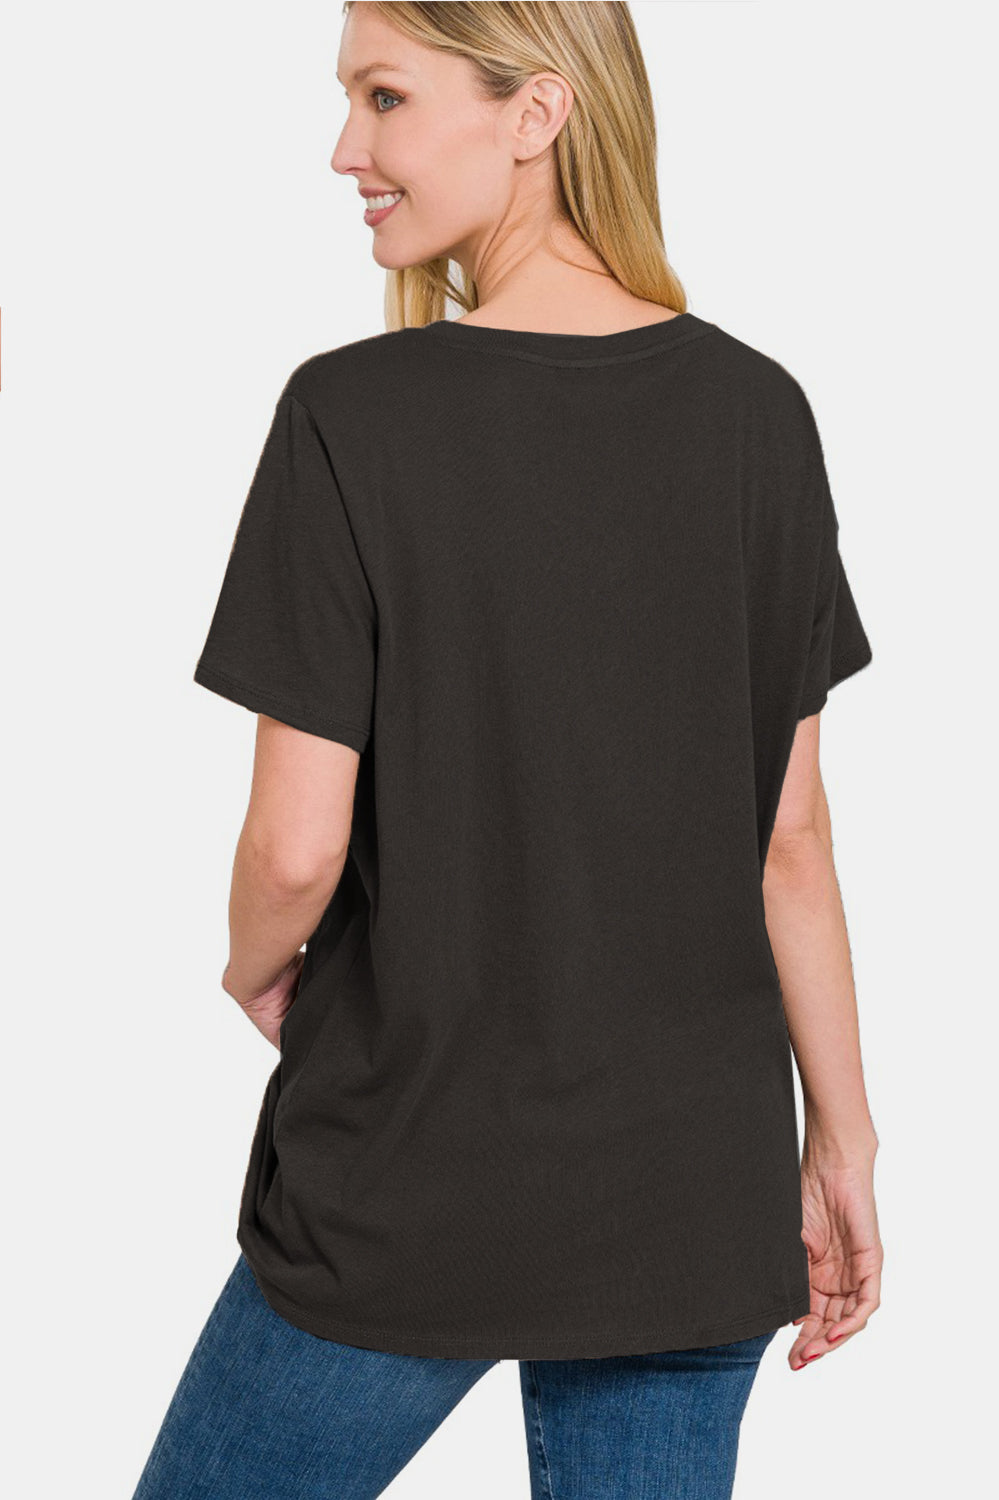 Zenana Full Size V-Neck Short Sleeve T-Shirt Trendsi